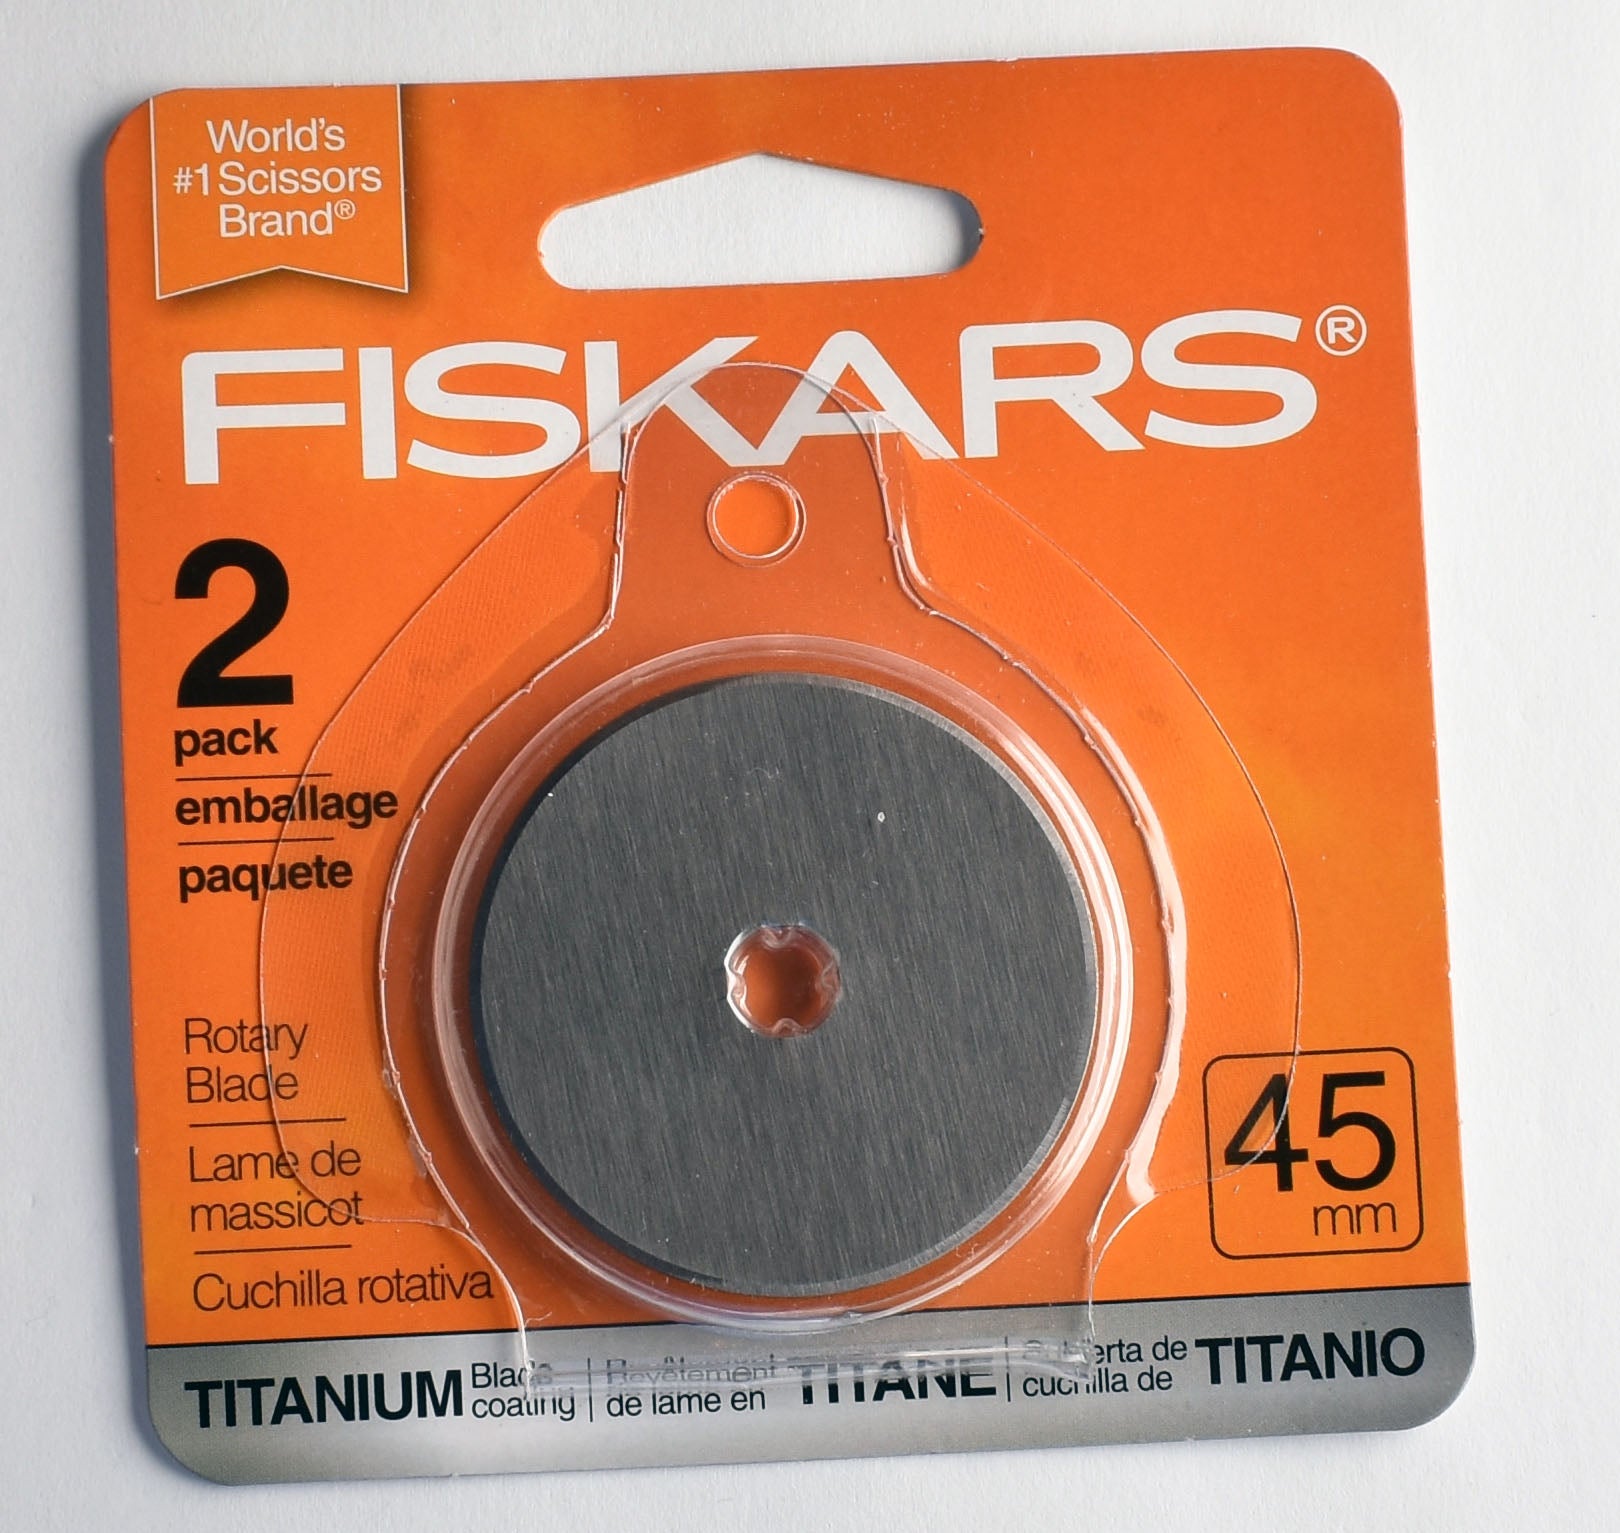 Fiskars Rotary Blade 65mm